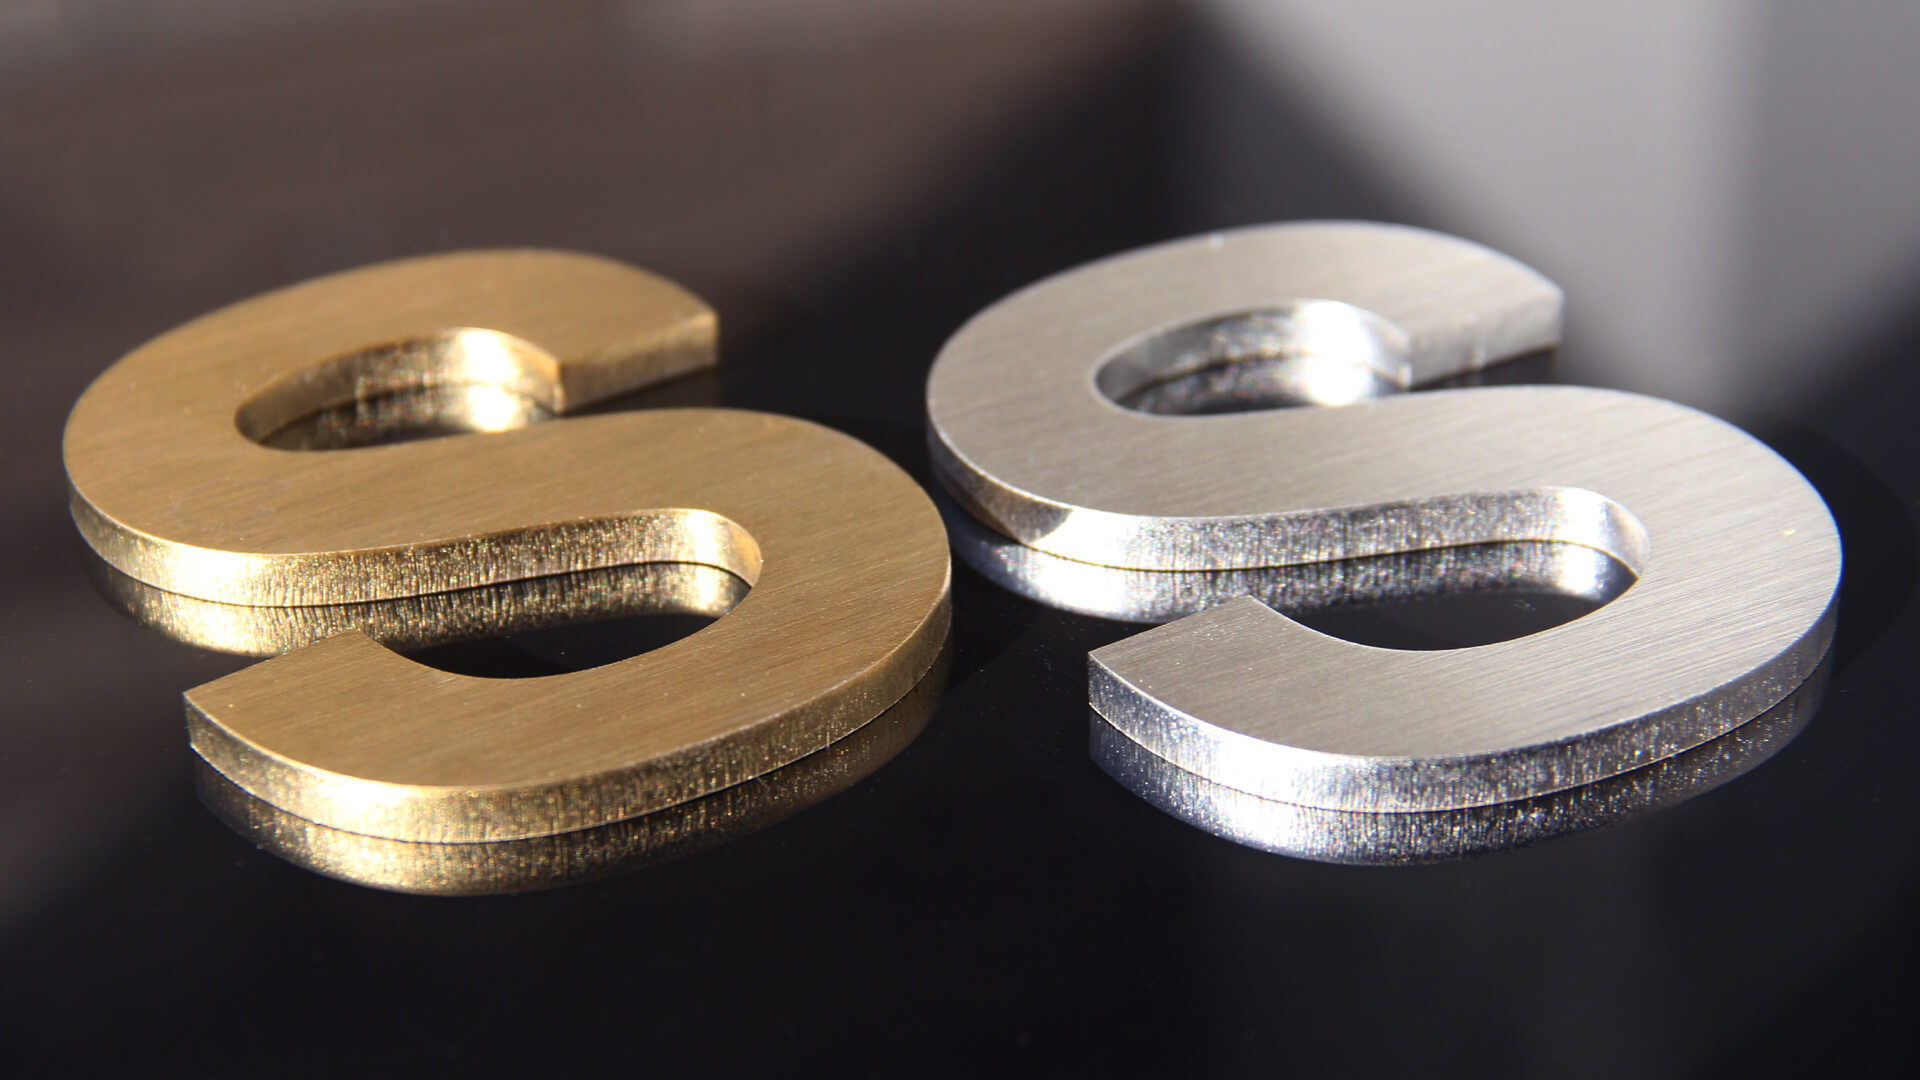 Litery S - Złota i srebrna litera S, wykonana z metalu